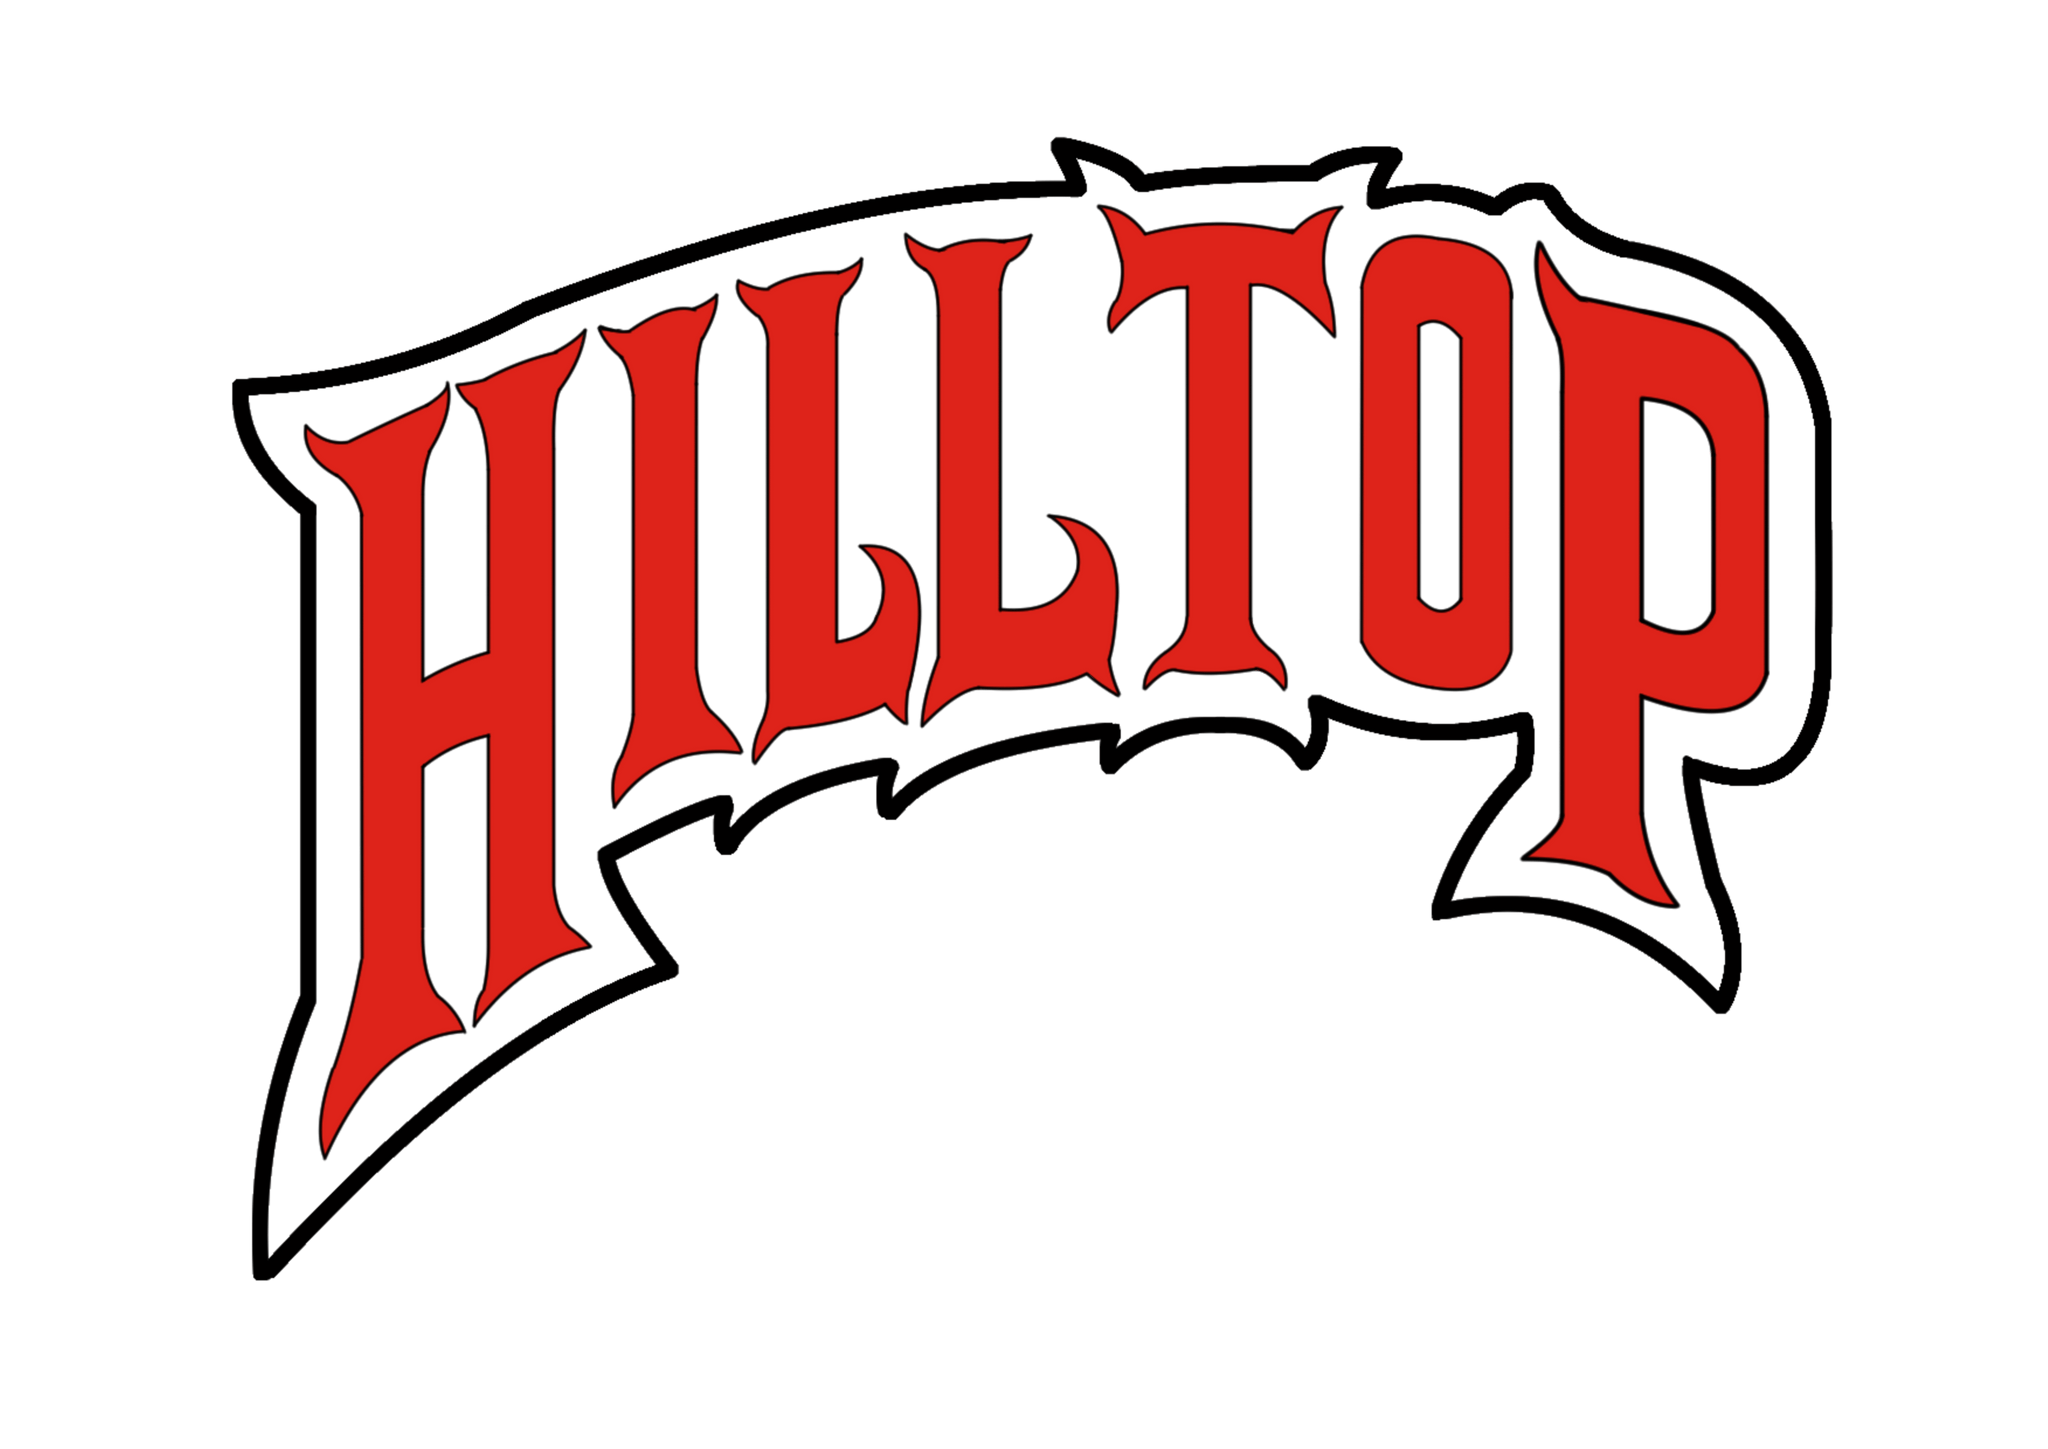 HILLTOP ORIGINS